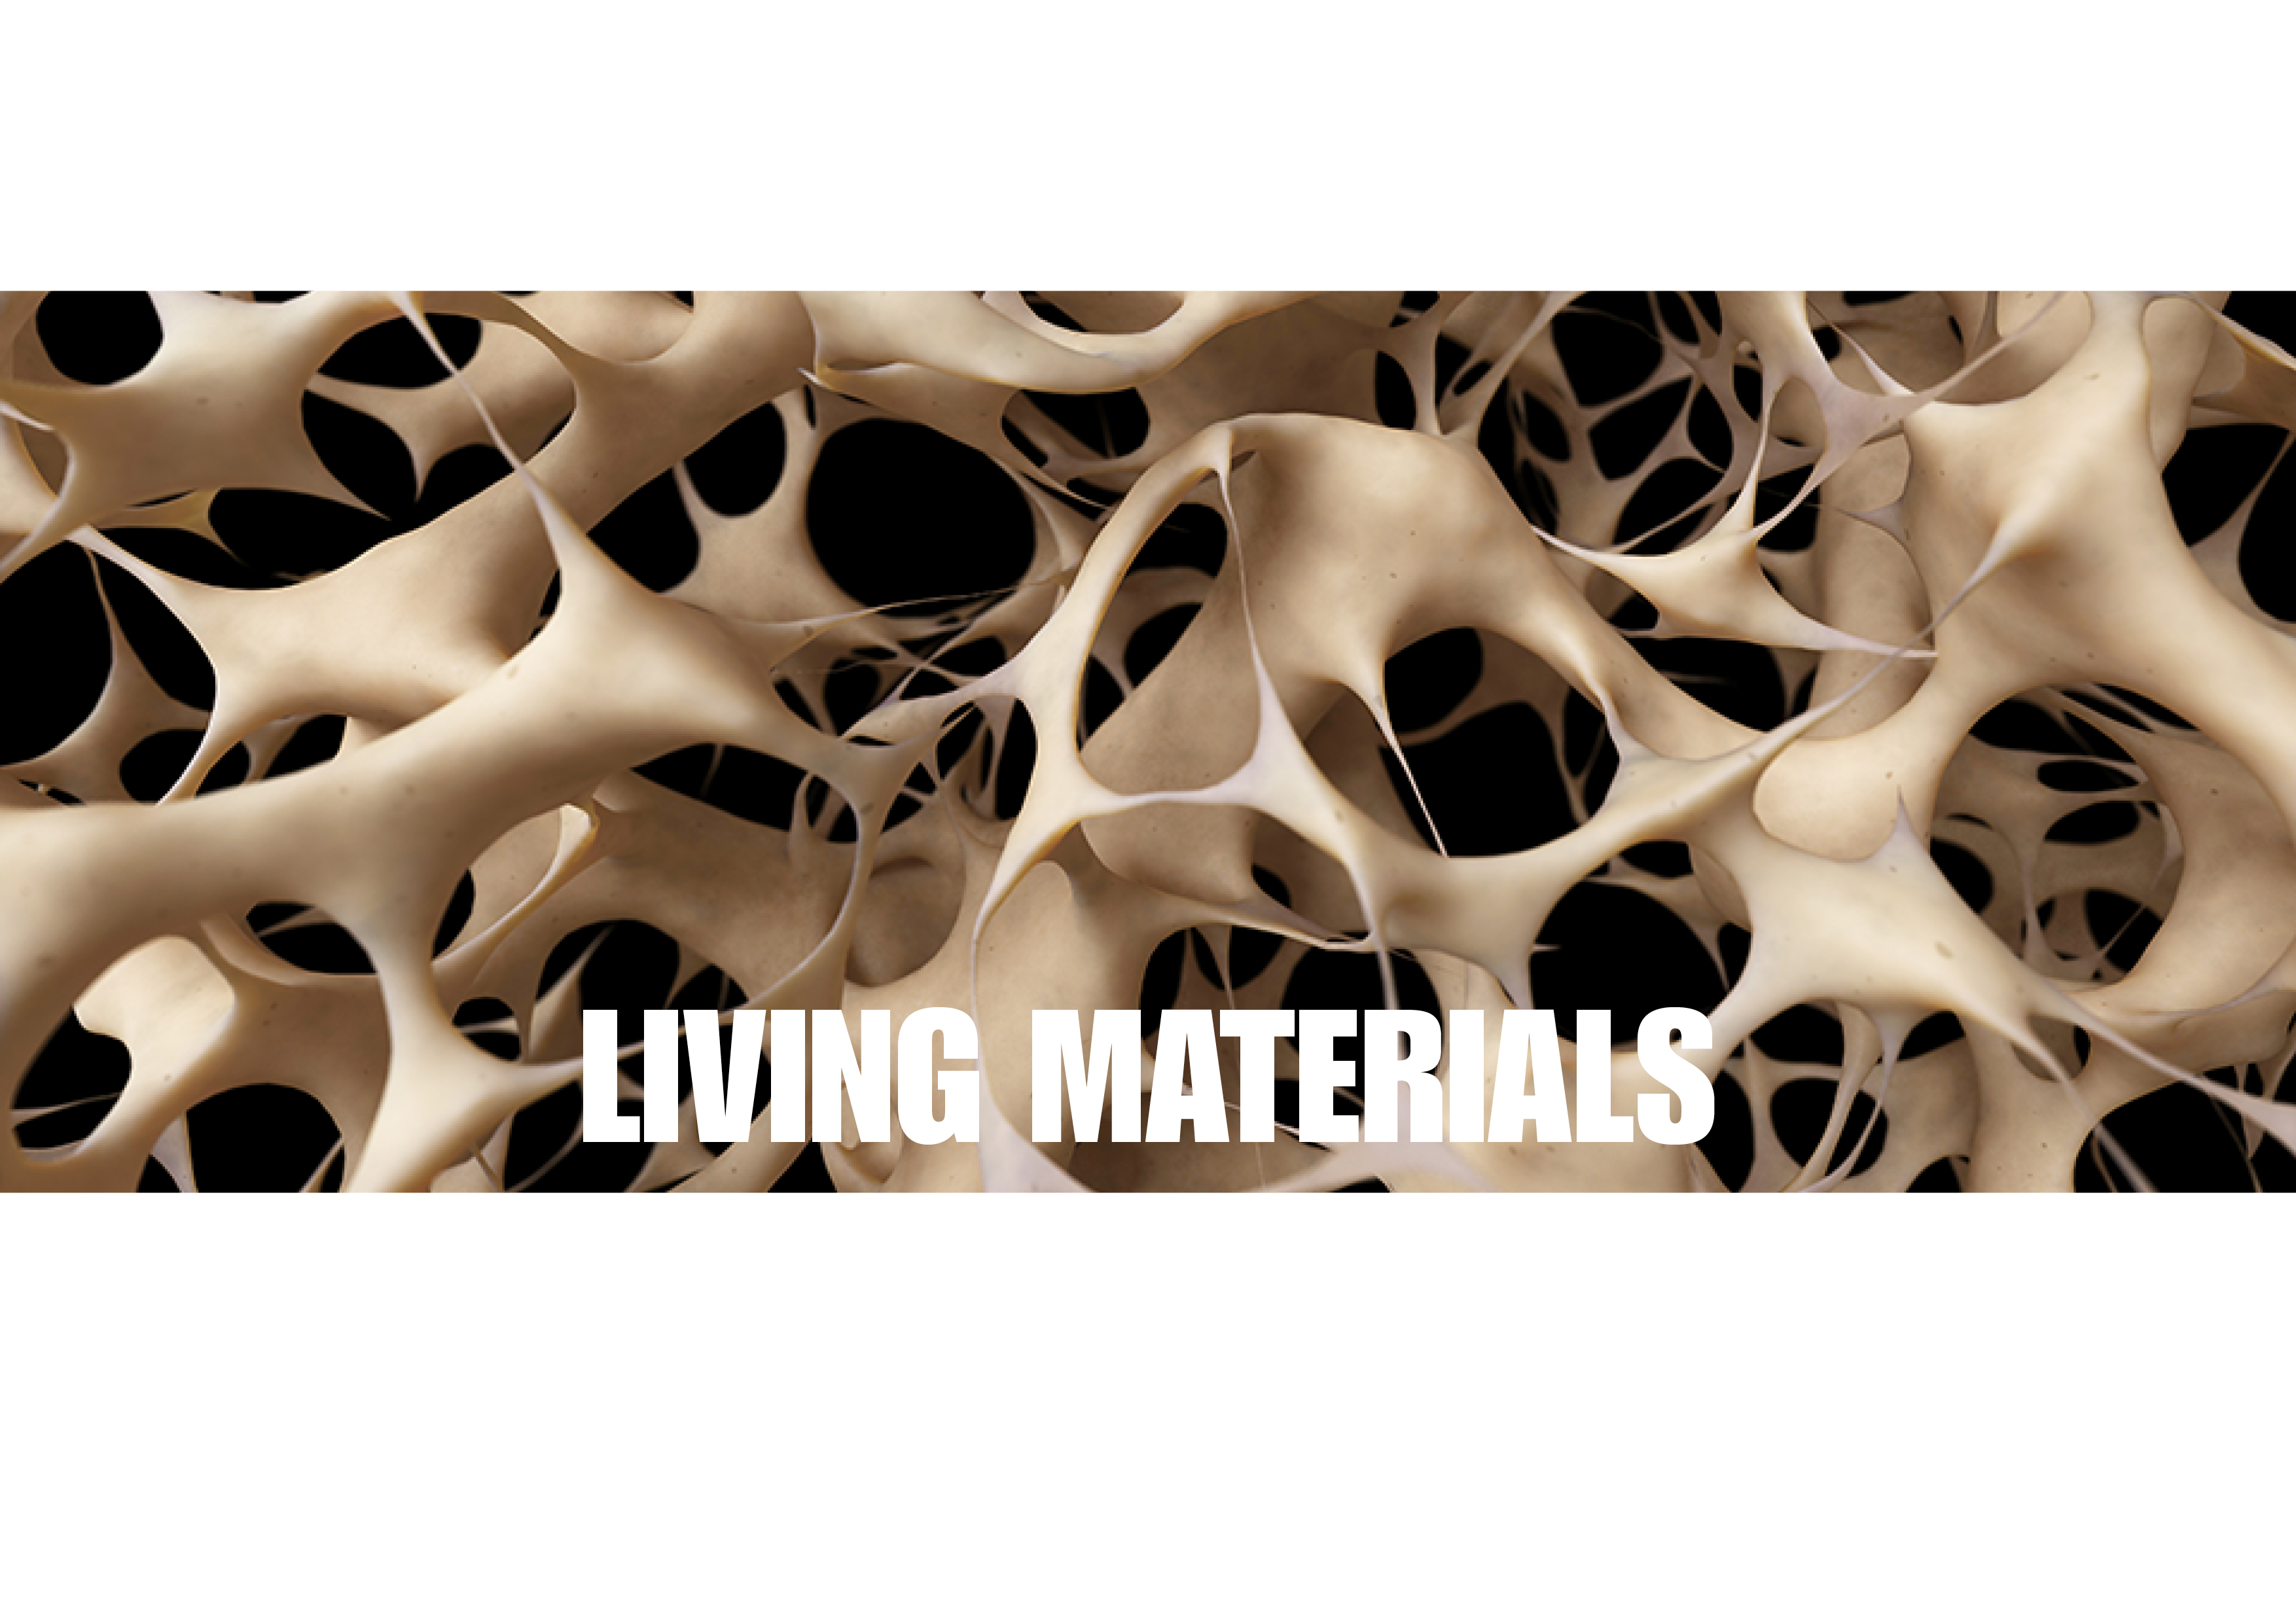 Living materials